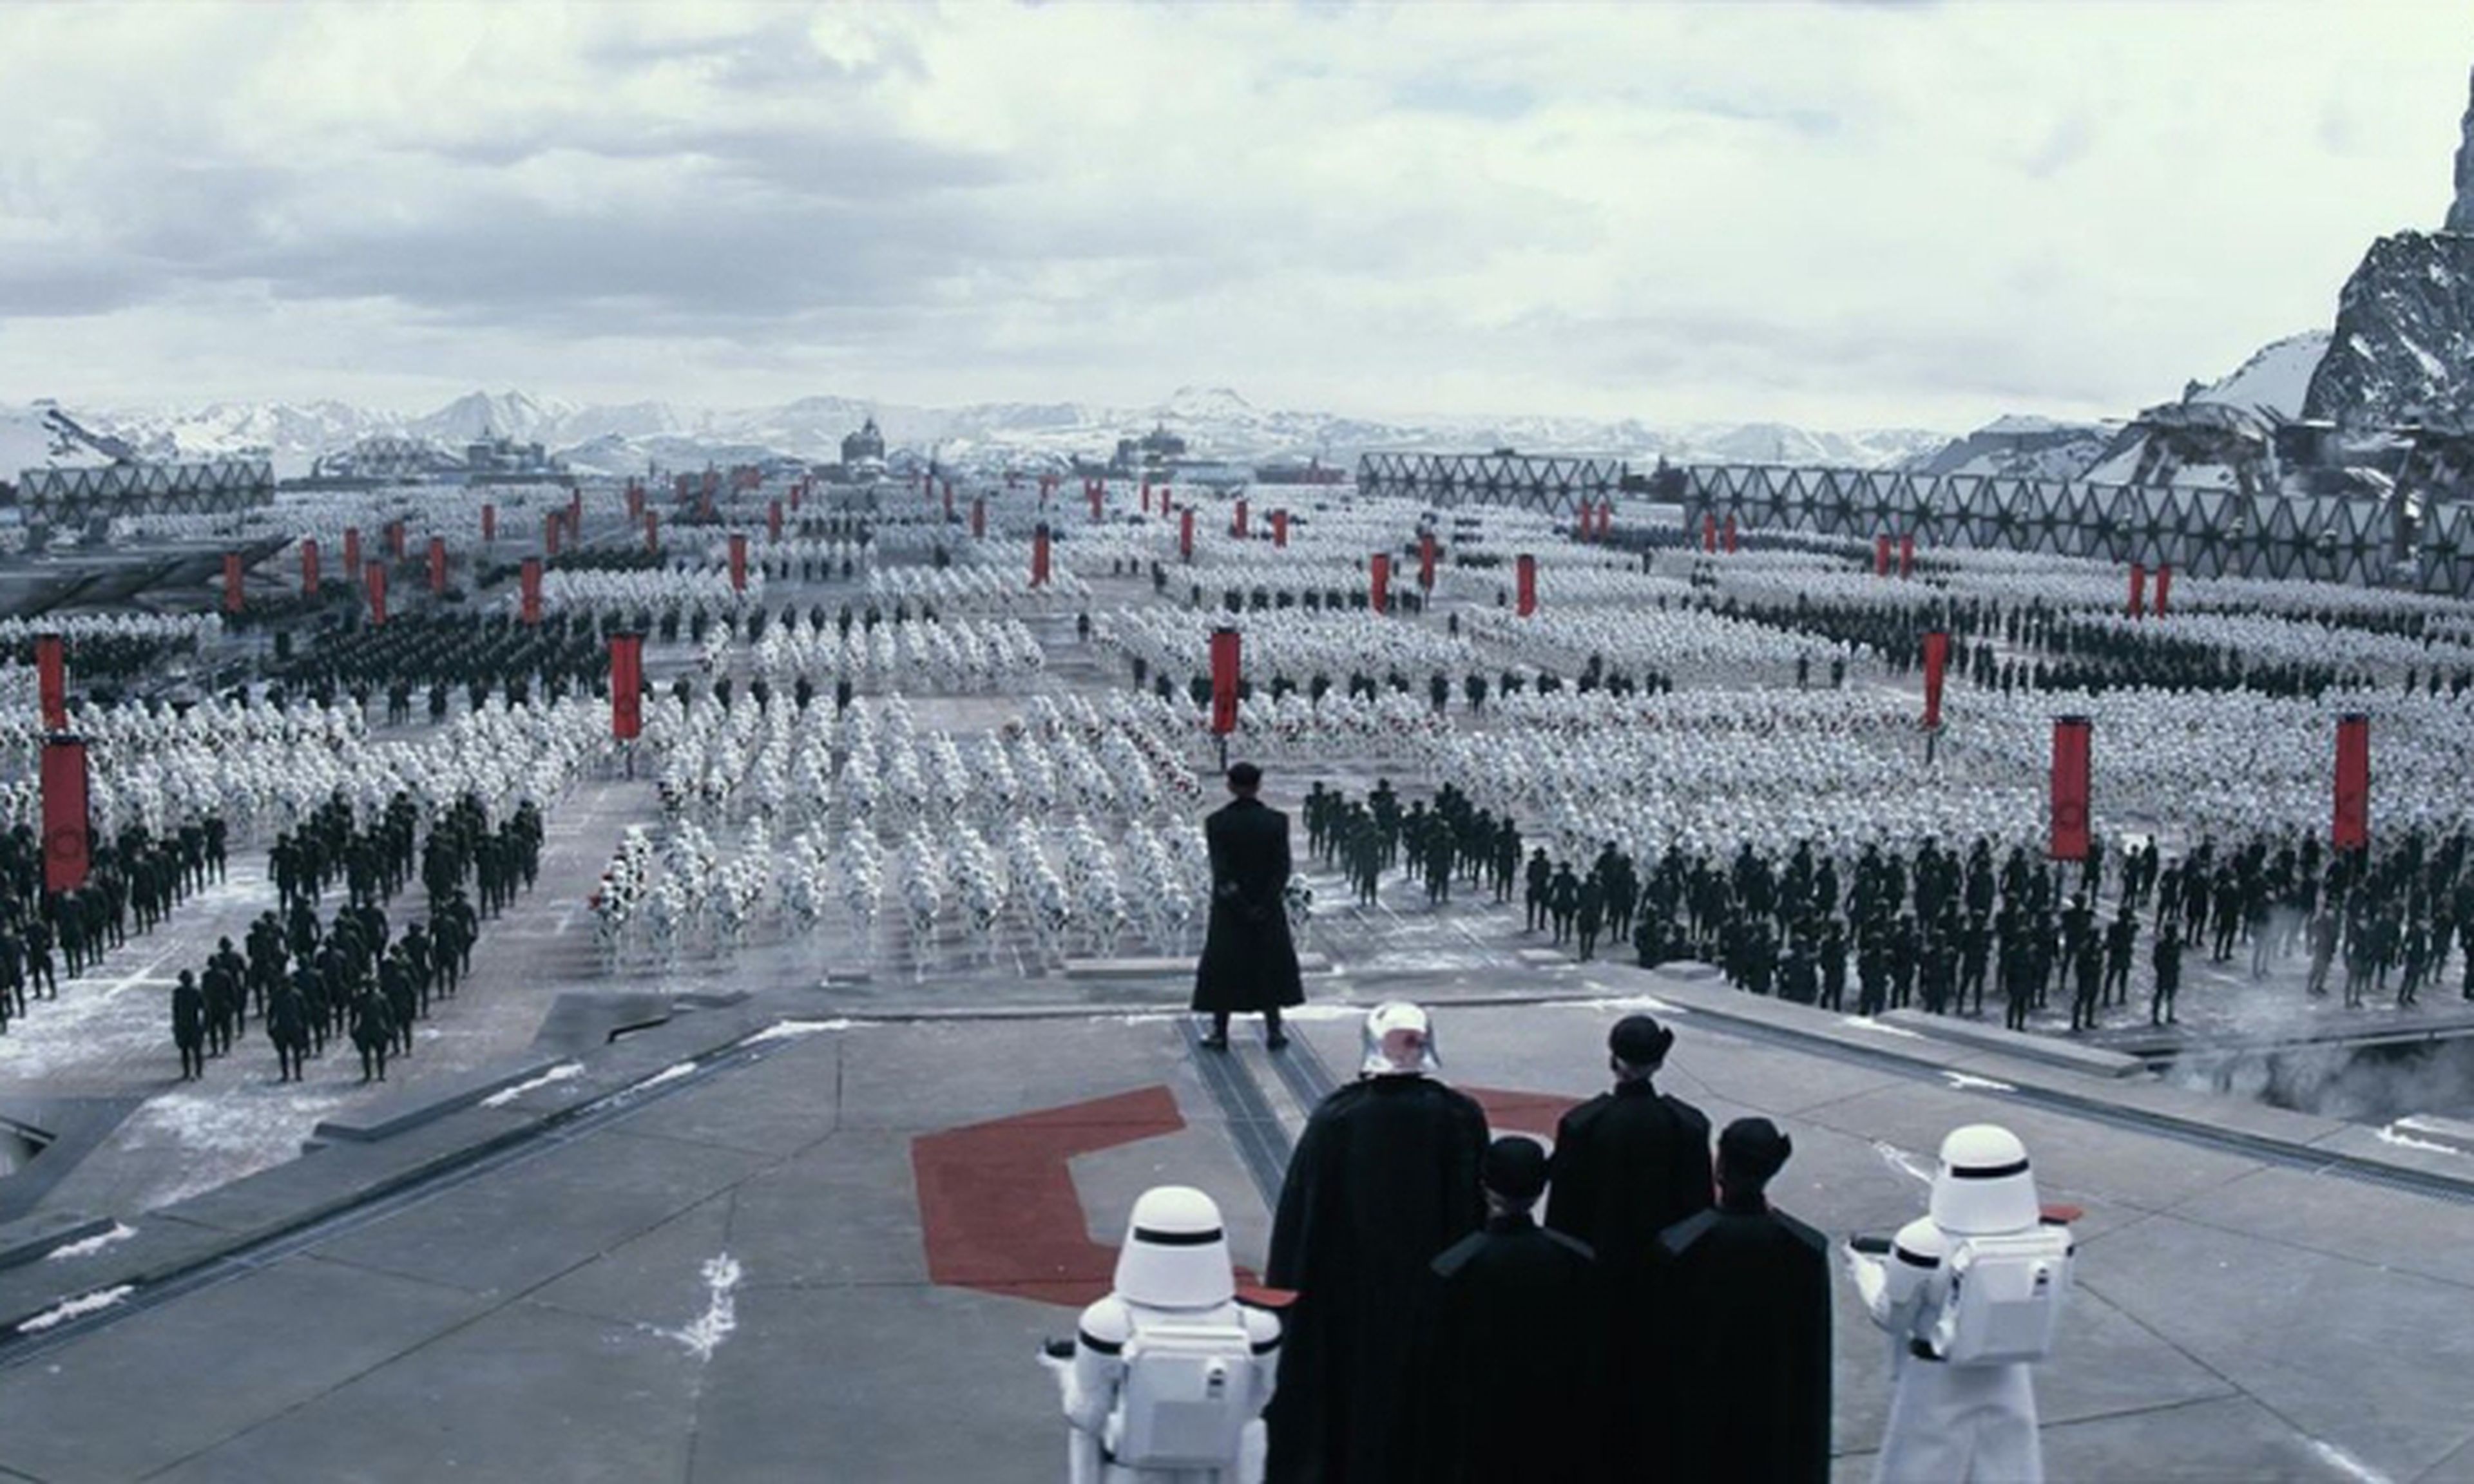 Las claves en la nueva escena de Star Wars Episodio VII El Despertar de la Fuerza